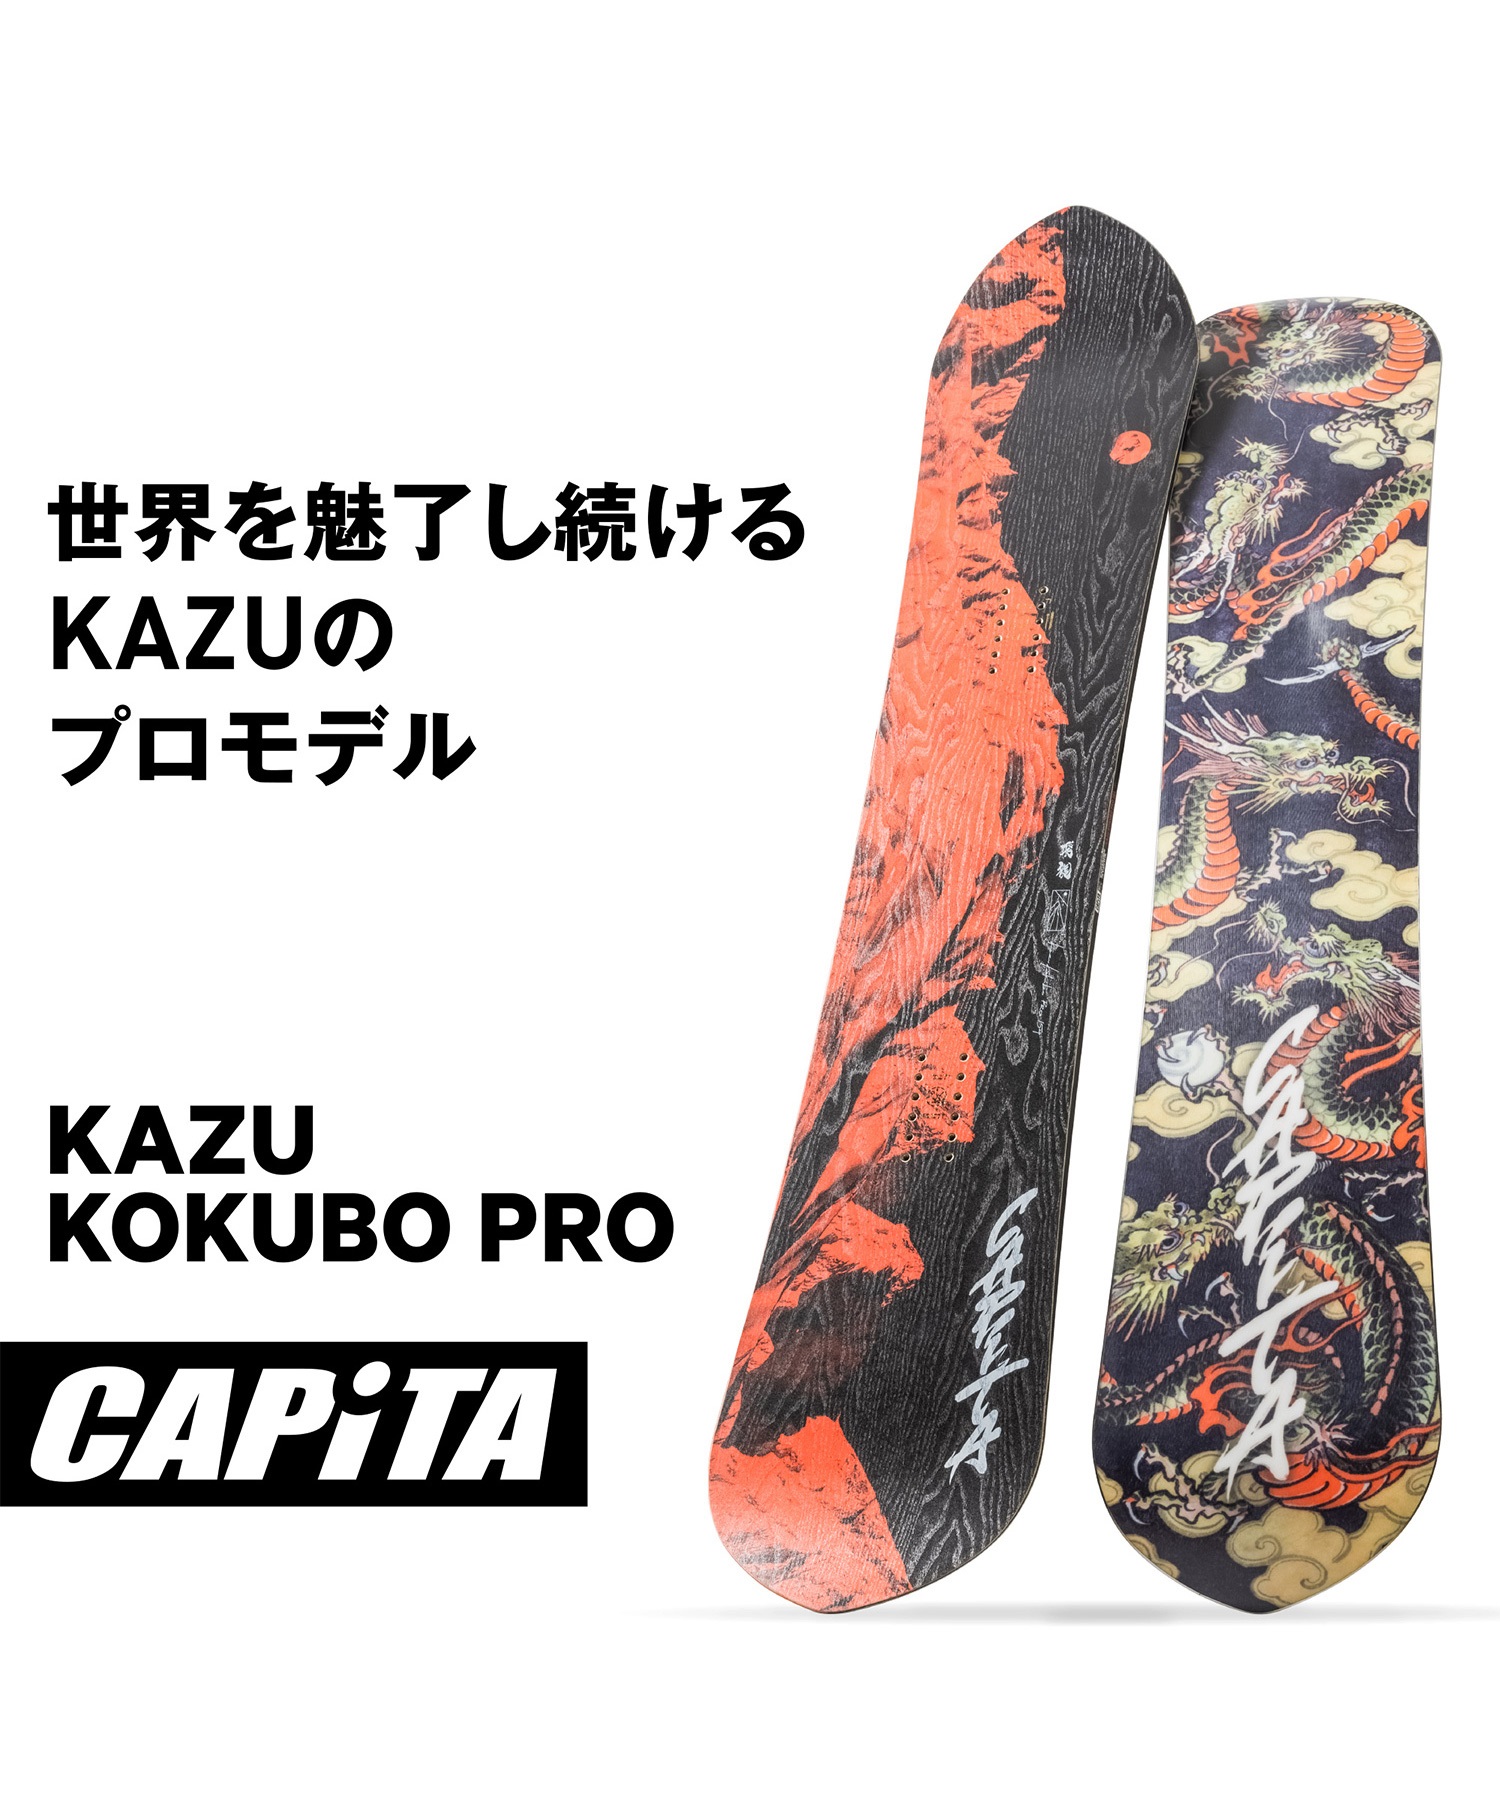 キャピタ capita kazu kokubo pro 154タイプパウダー